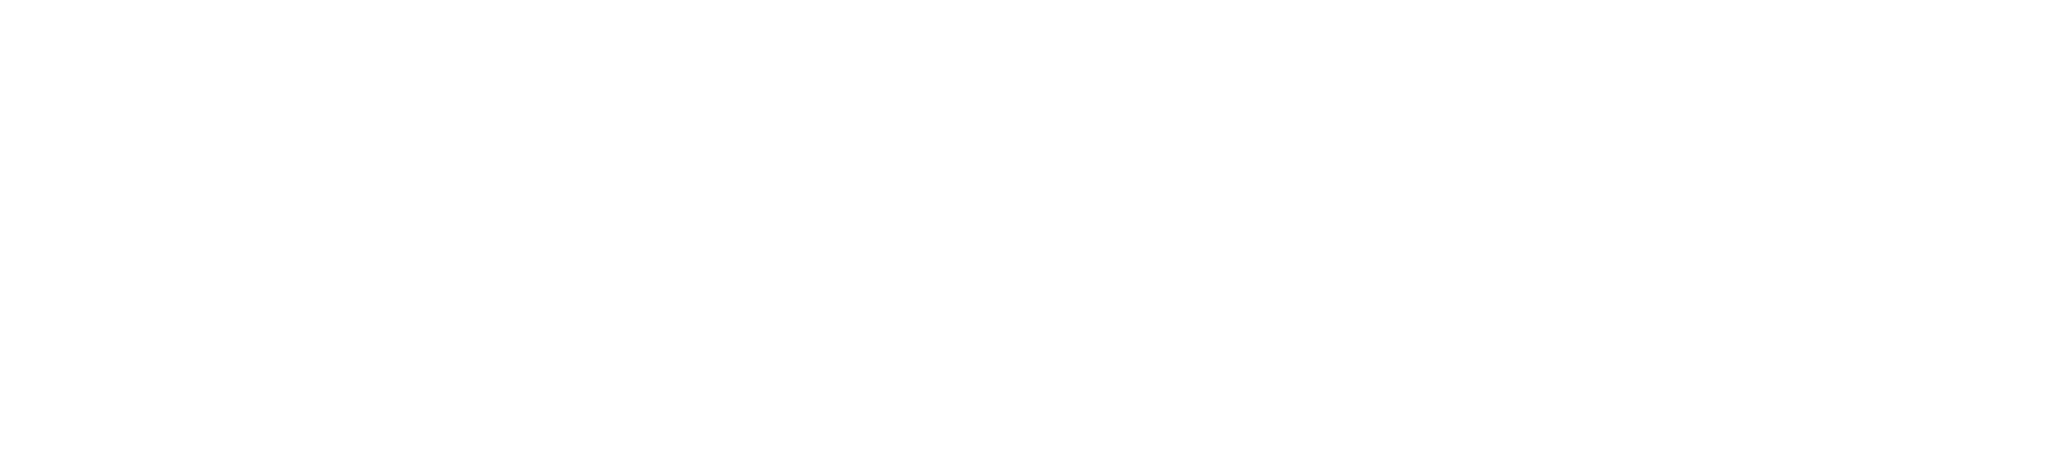 splunk community logo